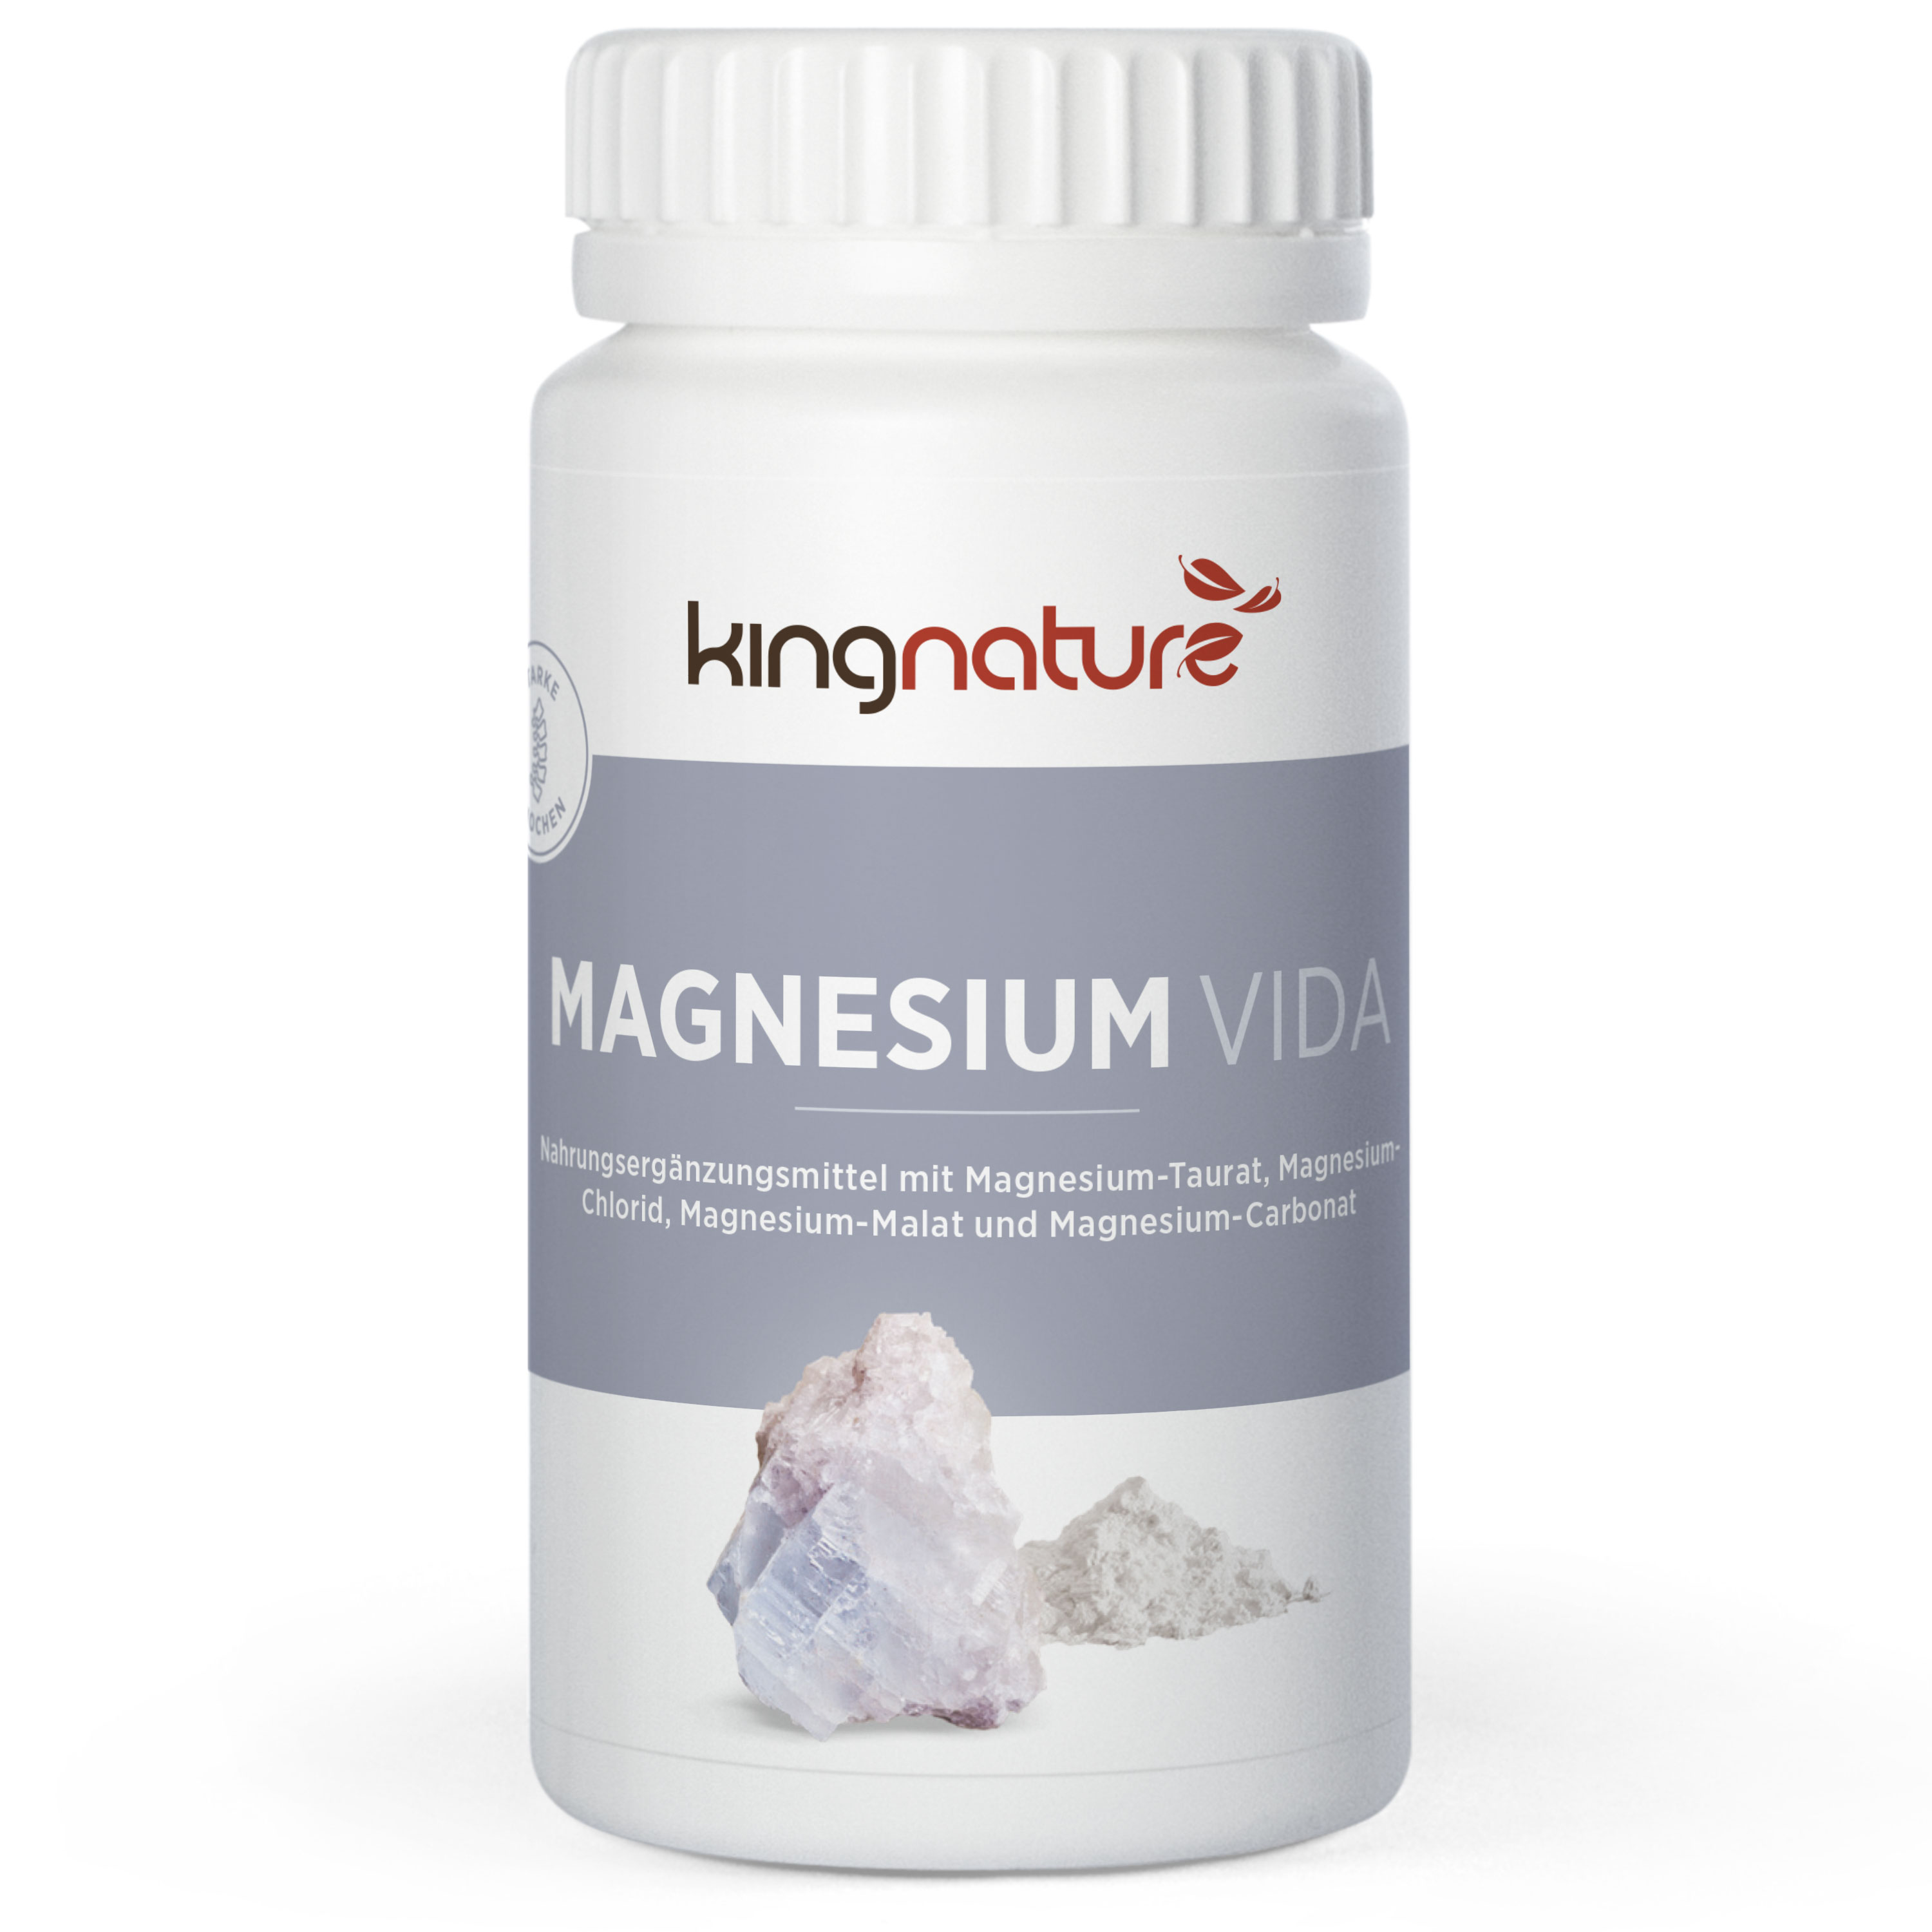 Kingnature Magnesium Vida